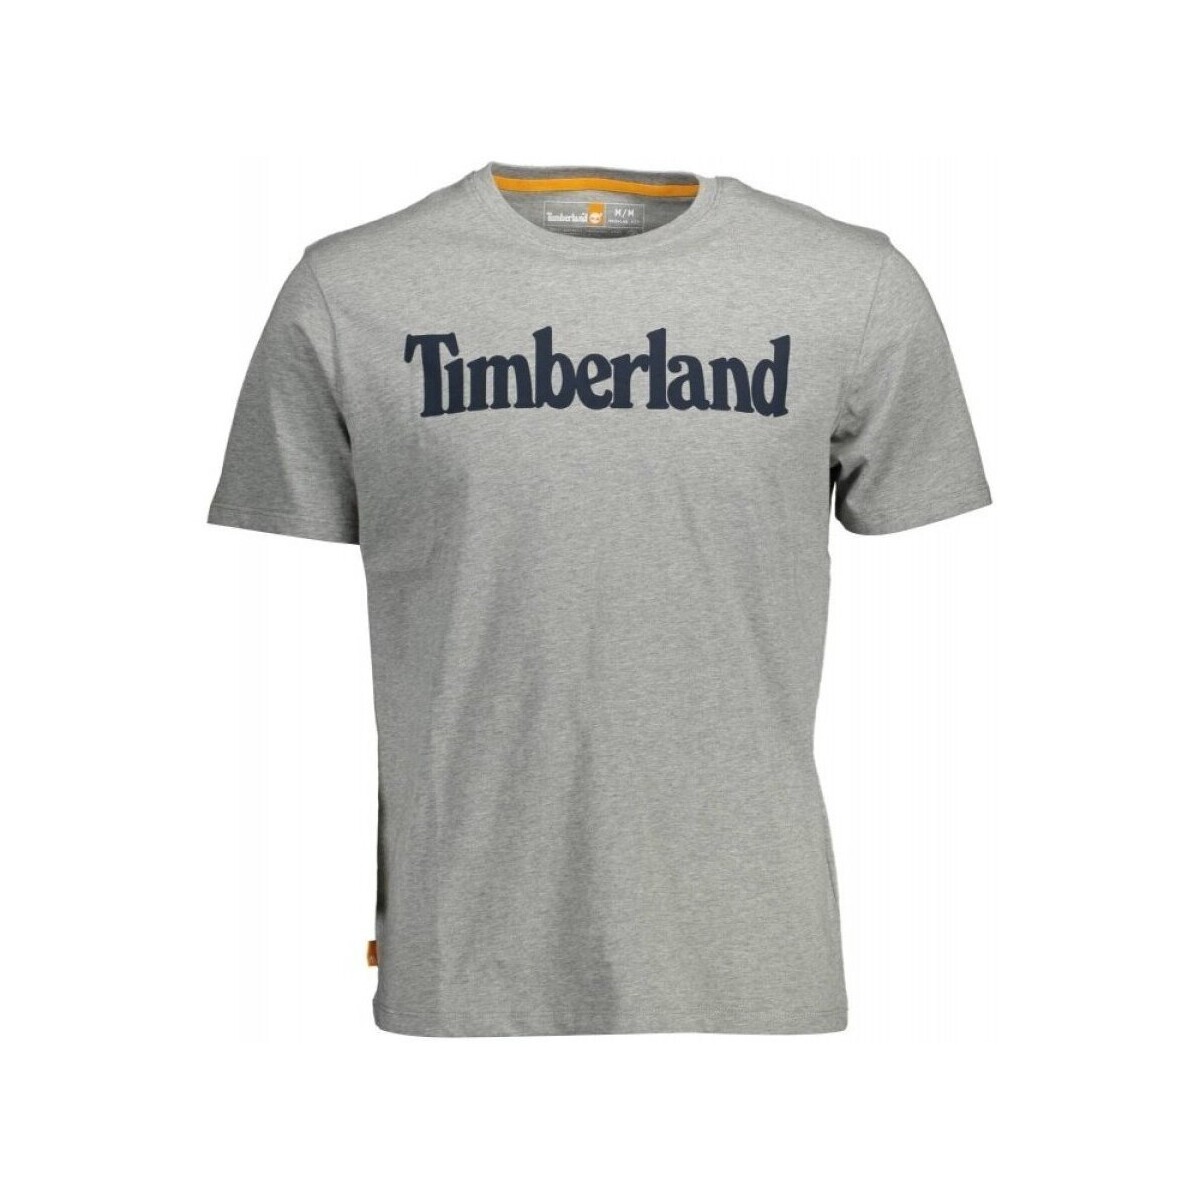 Textiel Heren T-shirts korte mouwen Timberland TB0A2BRN Grijs